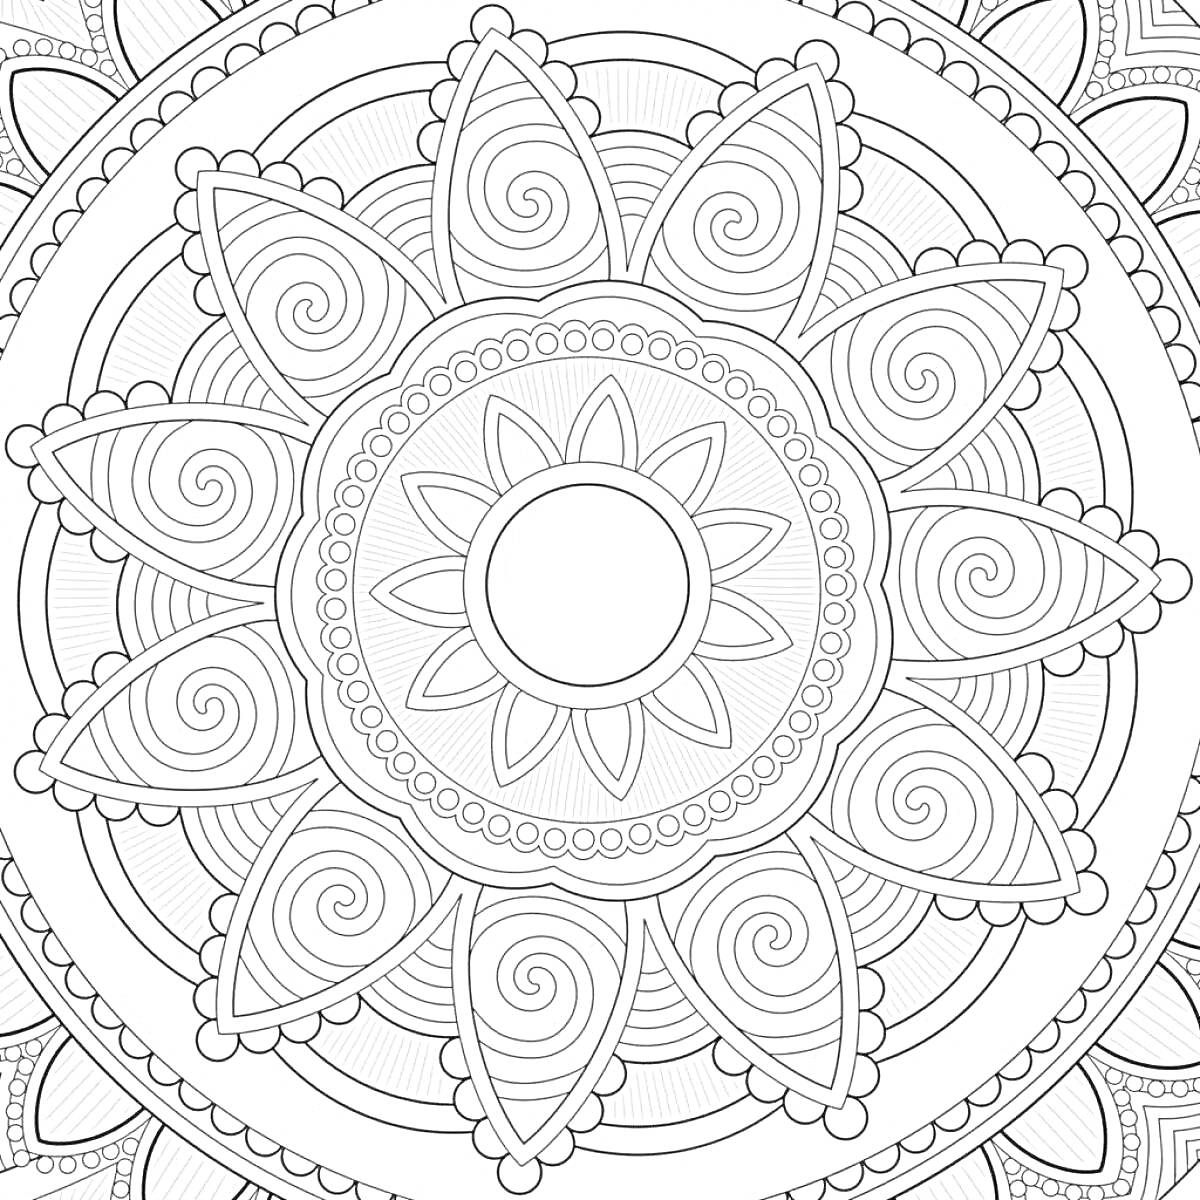 Раскраска Антистресс раскраска с центральным кругом, лепестками, спиралями и узорами